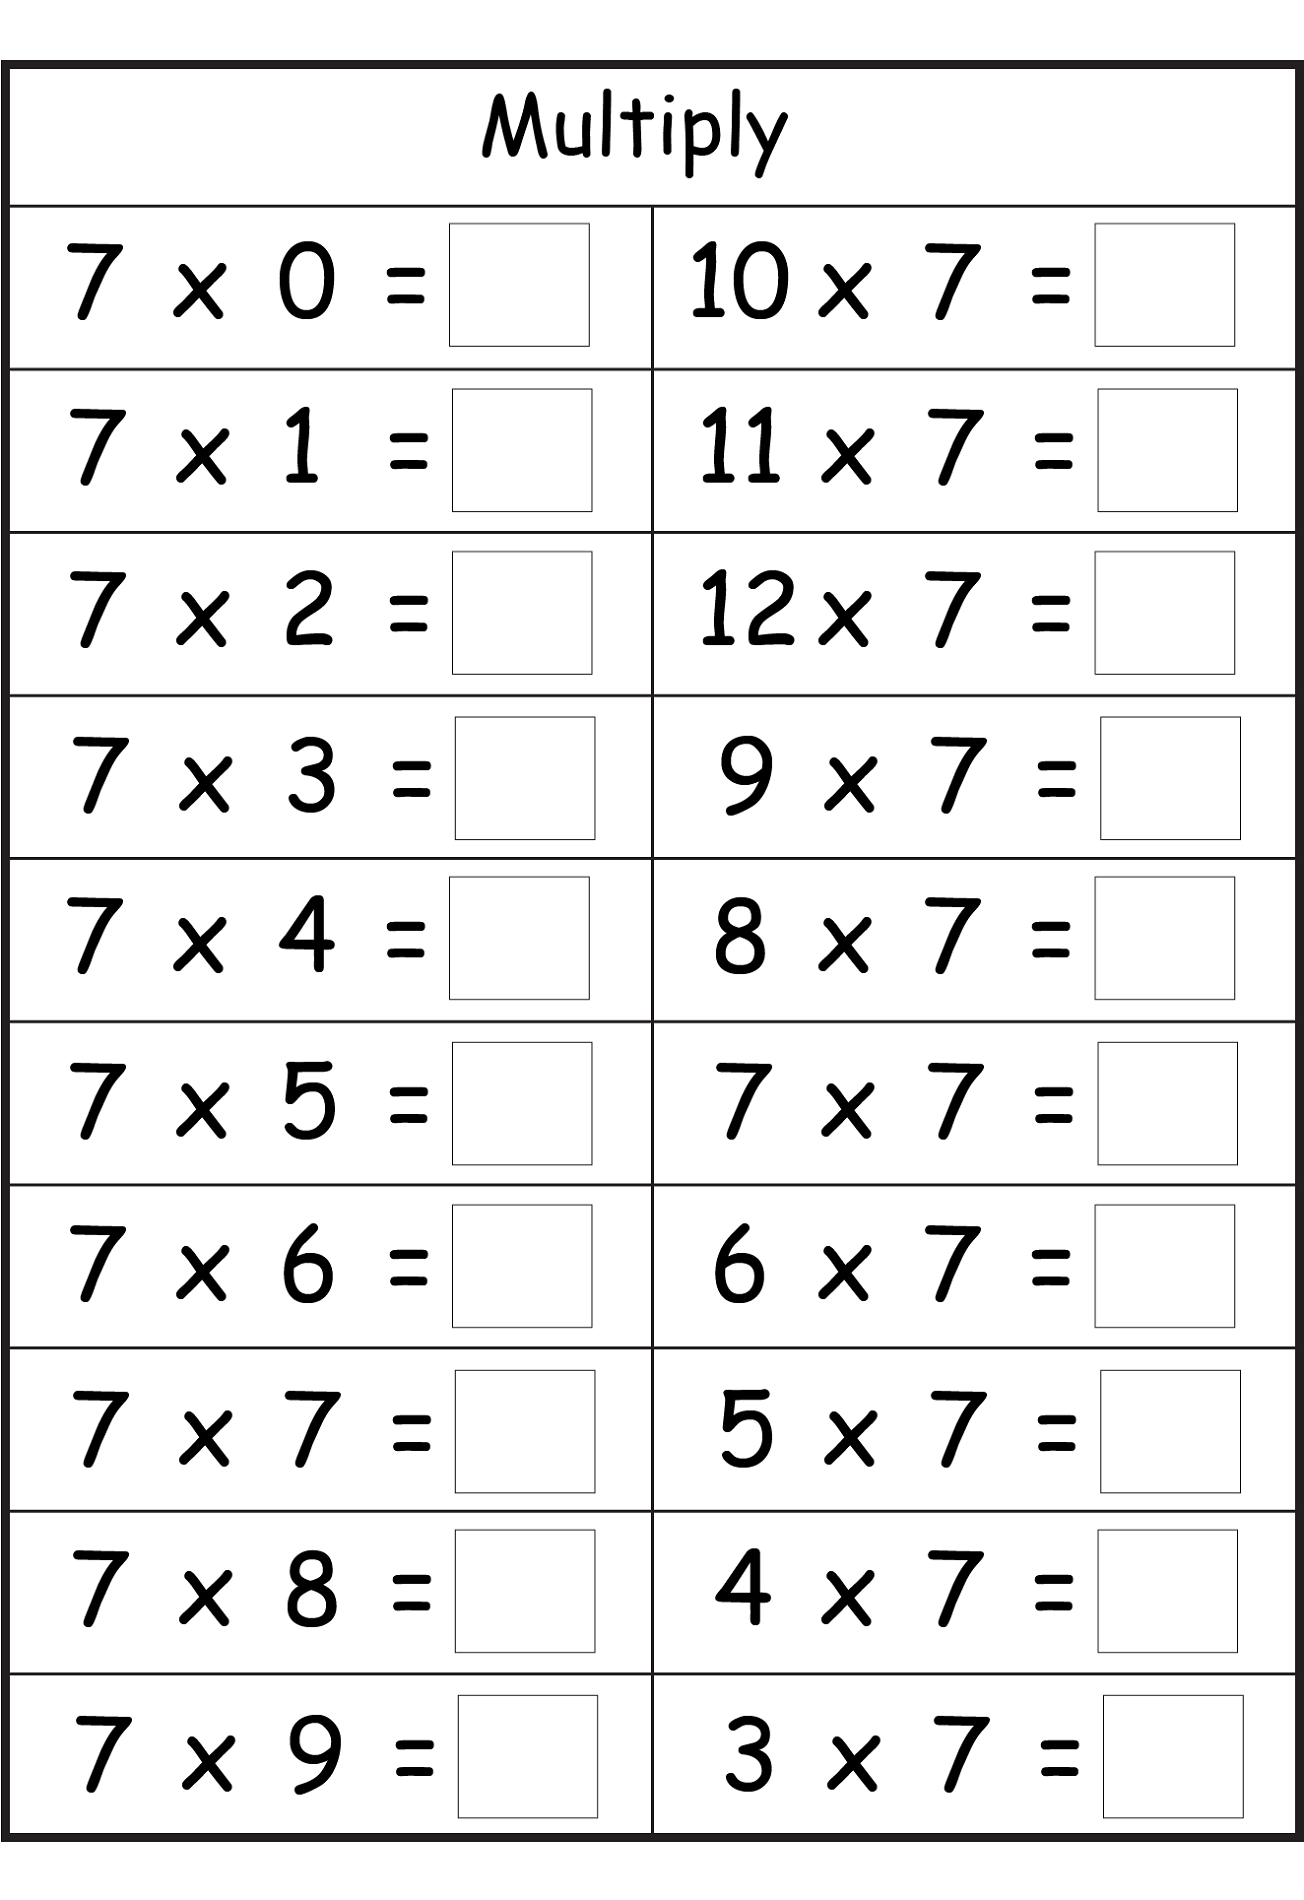 Multiplication Worksheets 6 7 8 Printable Multiplication Flash Cards Worksheet On 6 Times